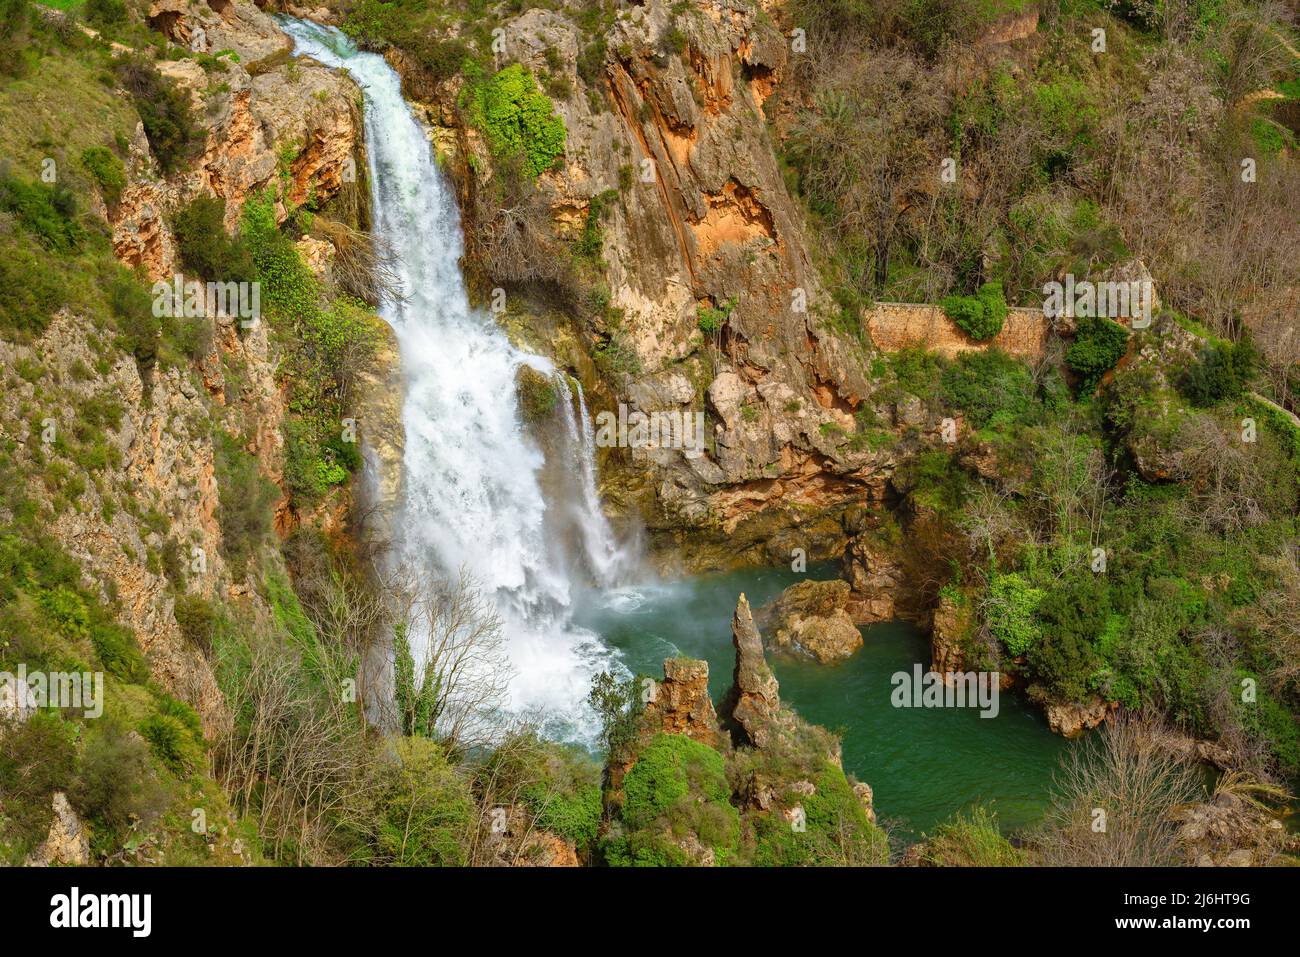 Salto de Chella, Vista panorámica de una cascada en la Comunidad Valenciana Foto de stock